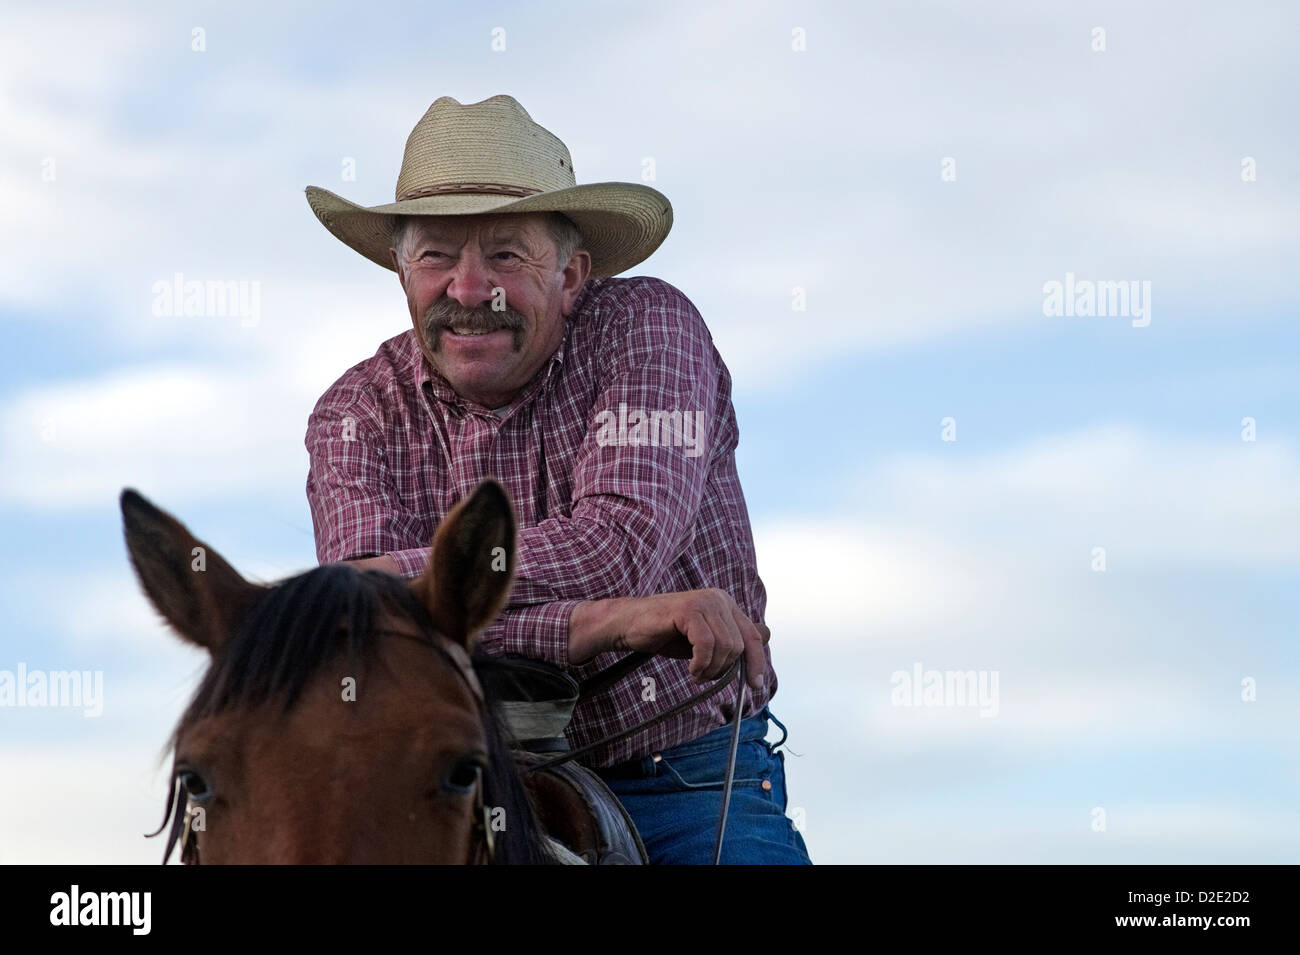 Un cowboy est assis sur son cheval à la Dalton Ranch dans la vallée de trèfle, NV. Banque D'Images